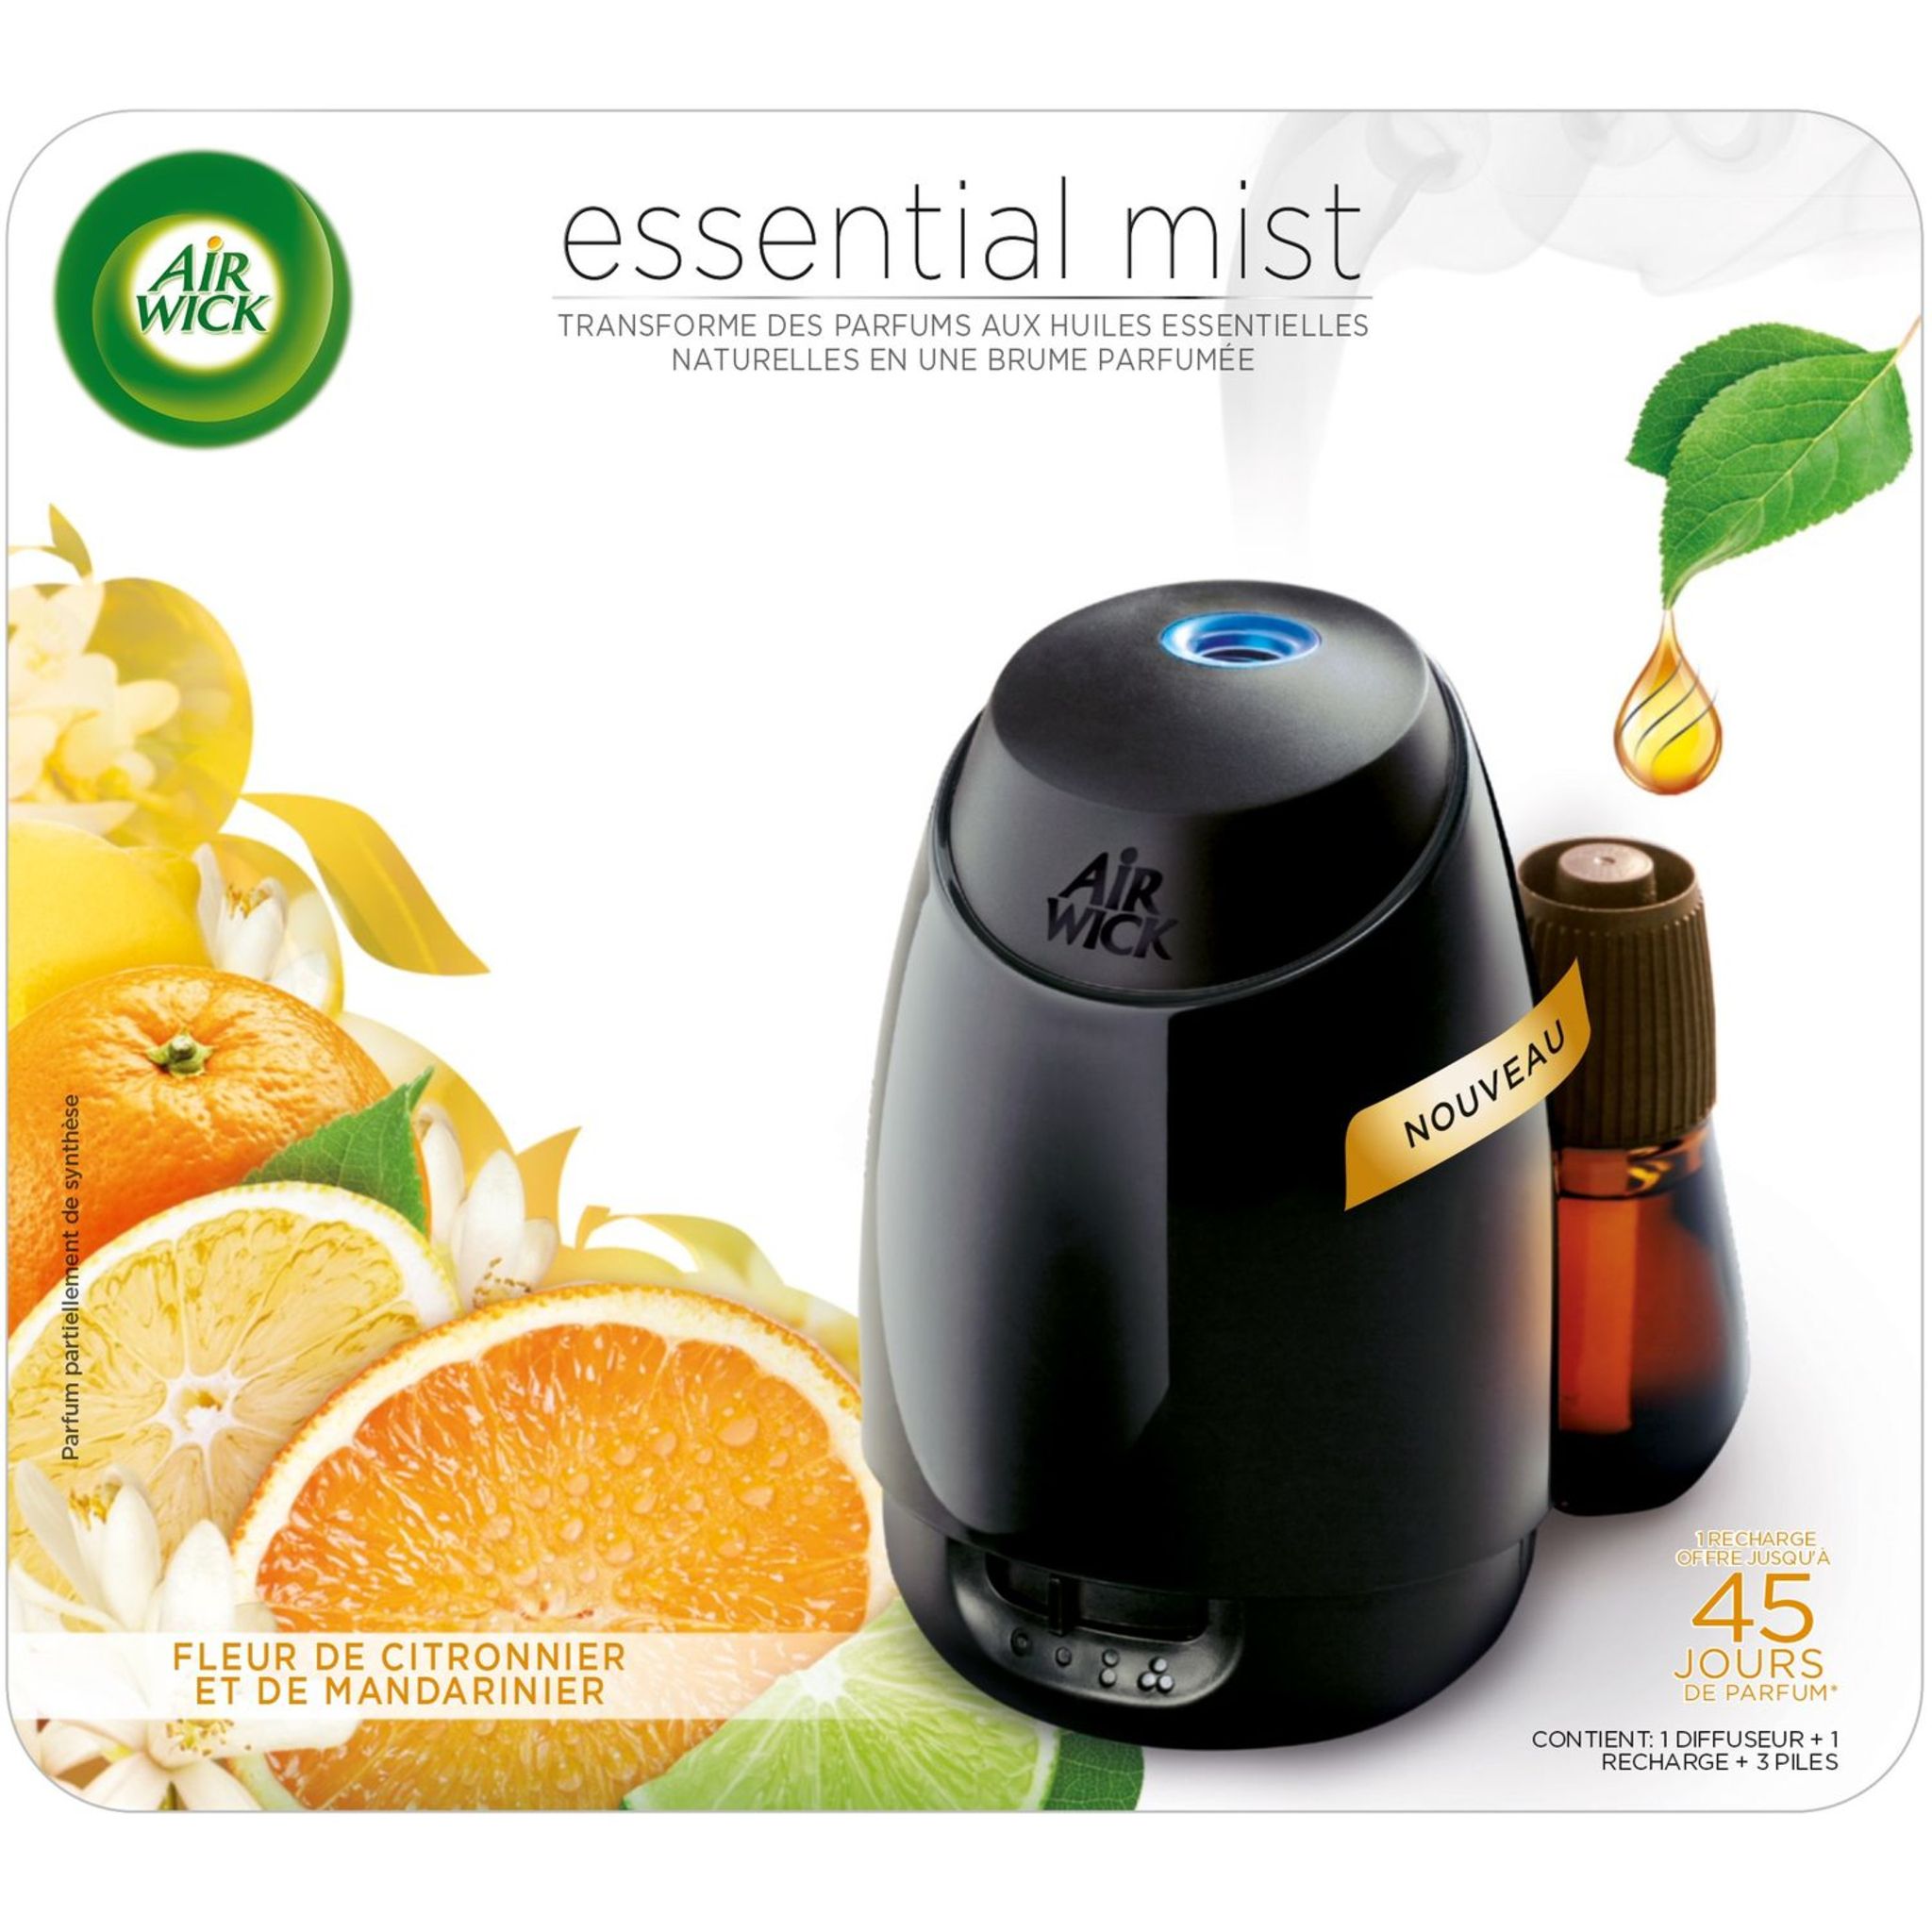 AIR WICK Essential Mist diffuseur automatique fleurs de citronnier